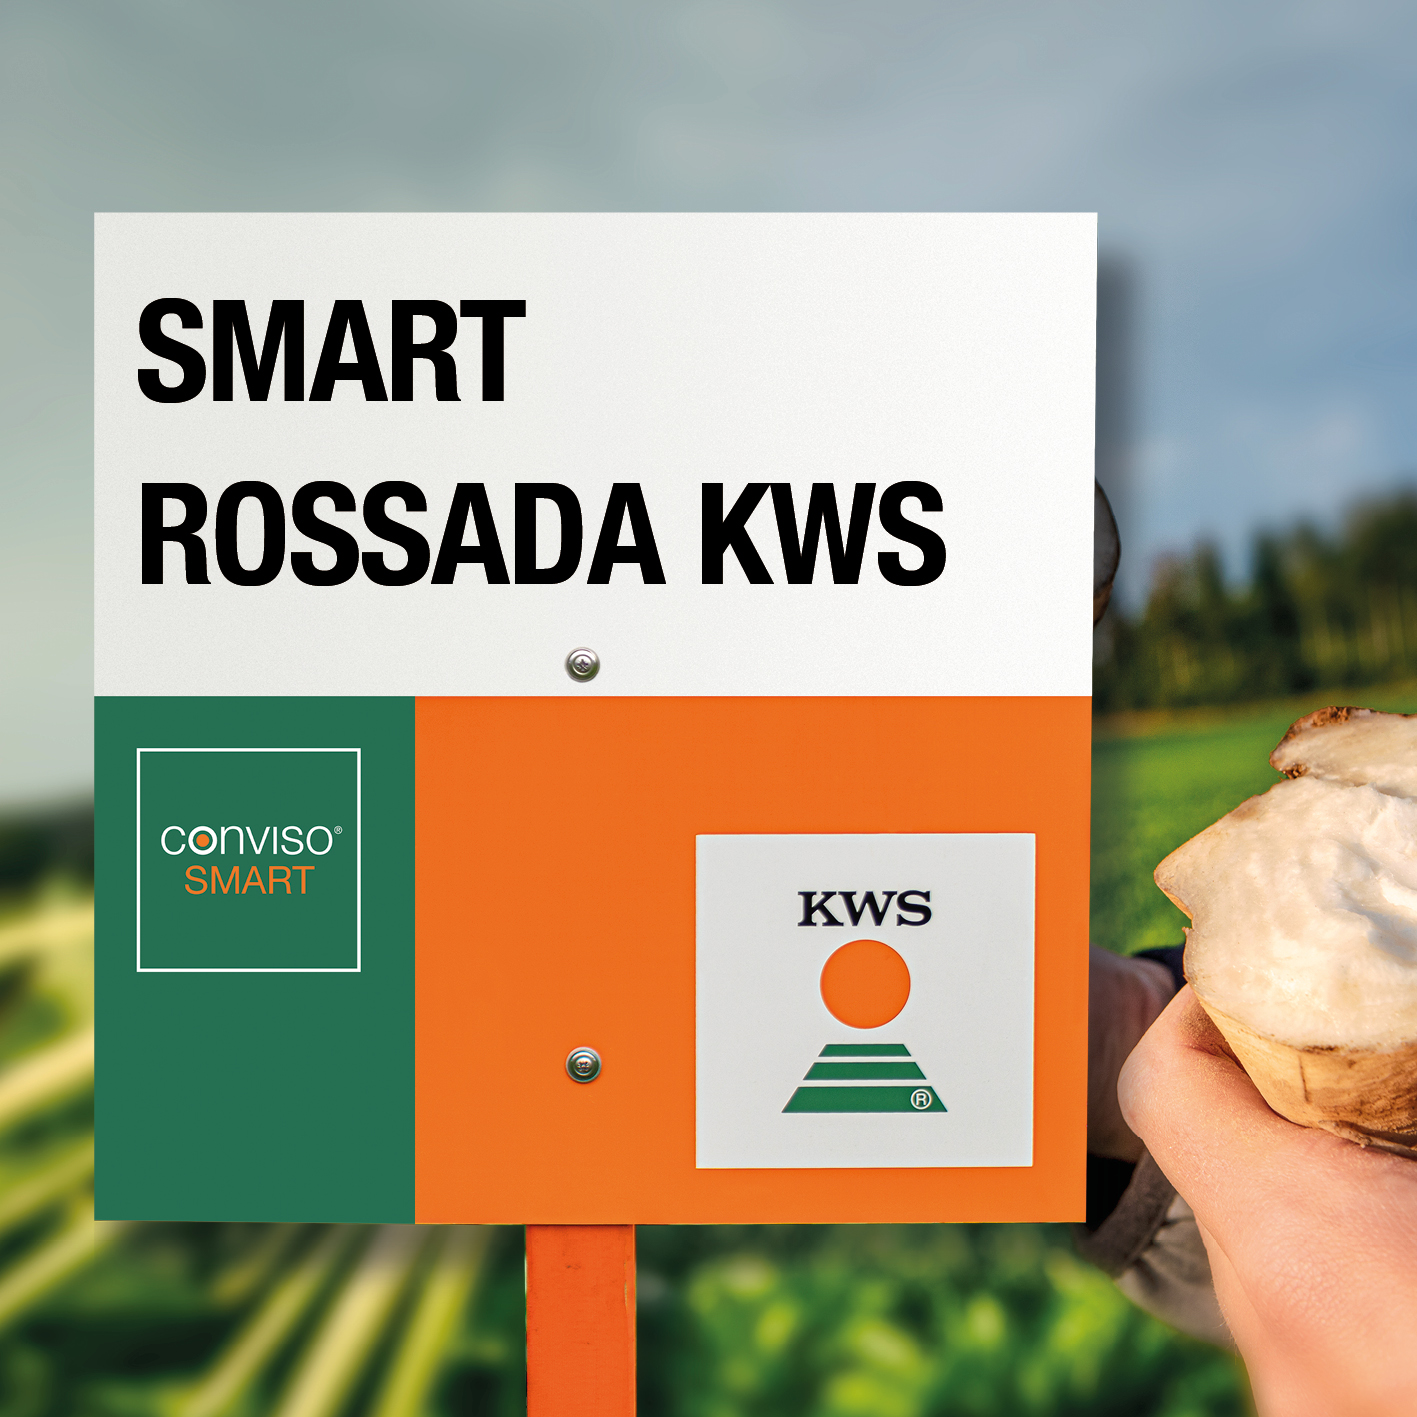 SMART-ROSSADA-KWS-MD.jpg